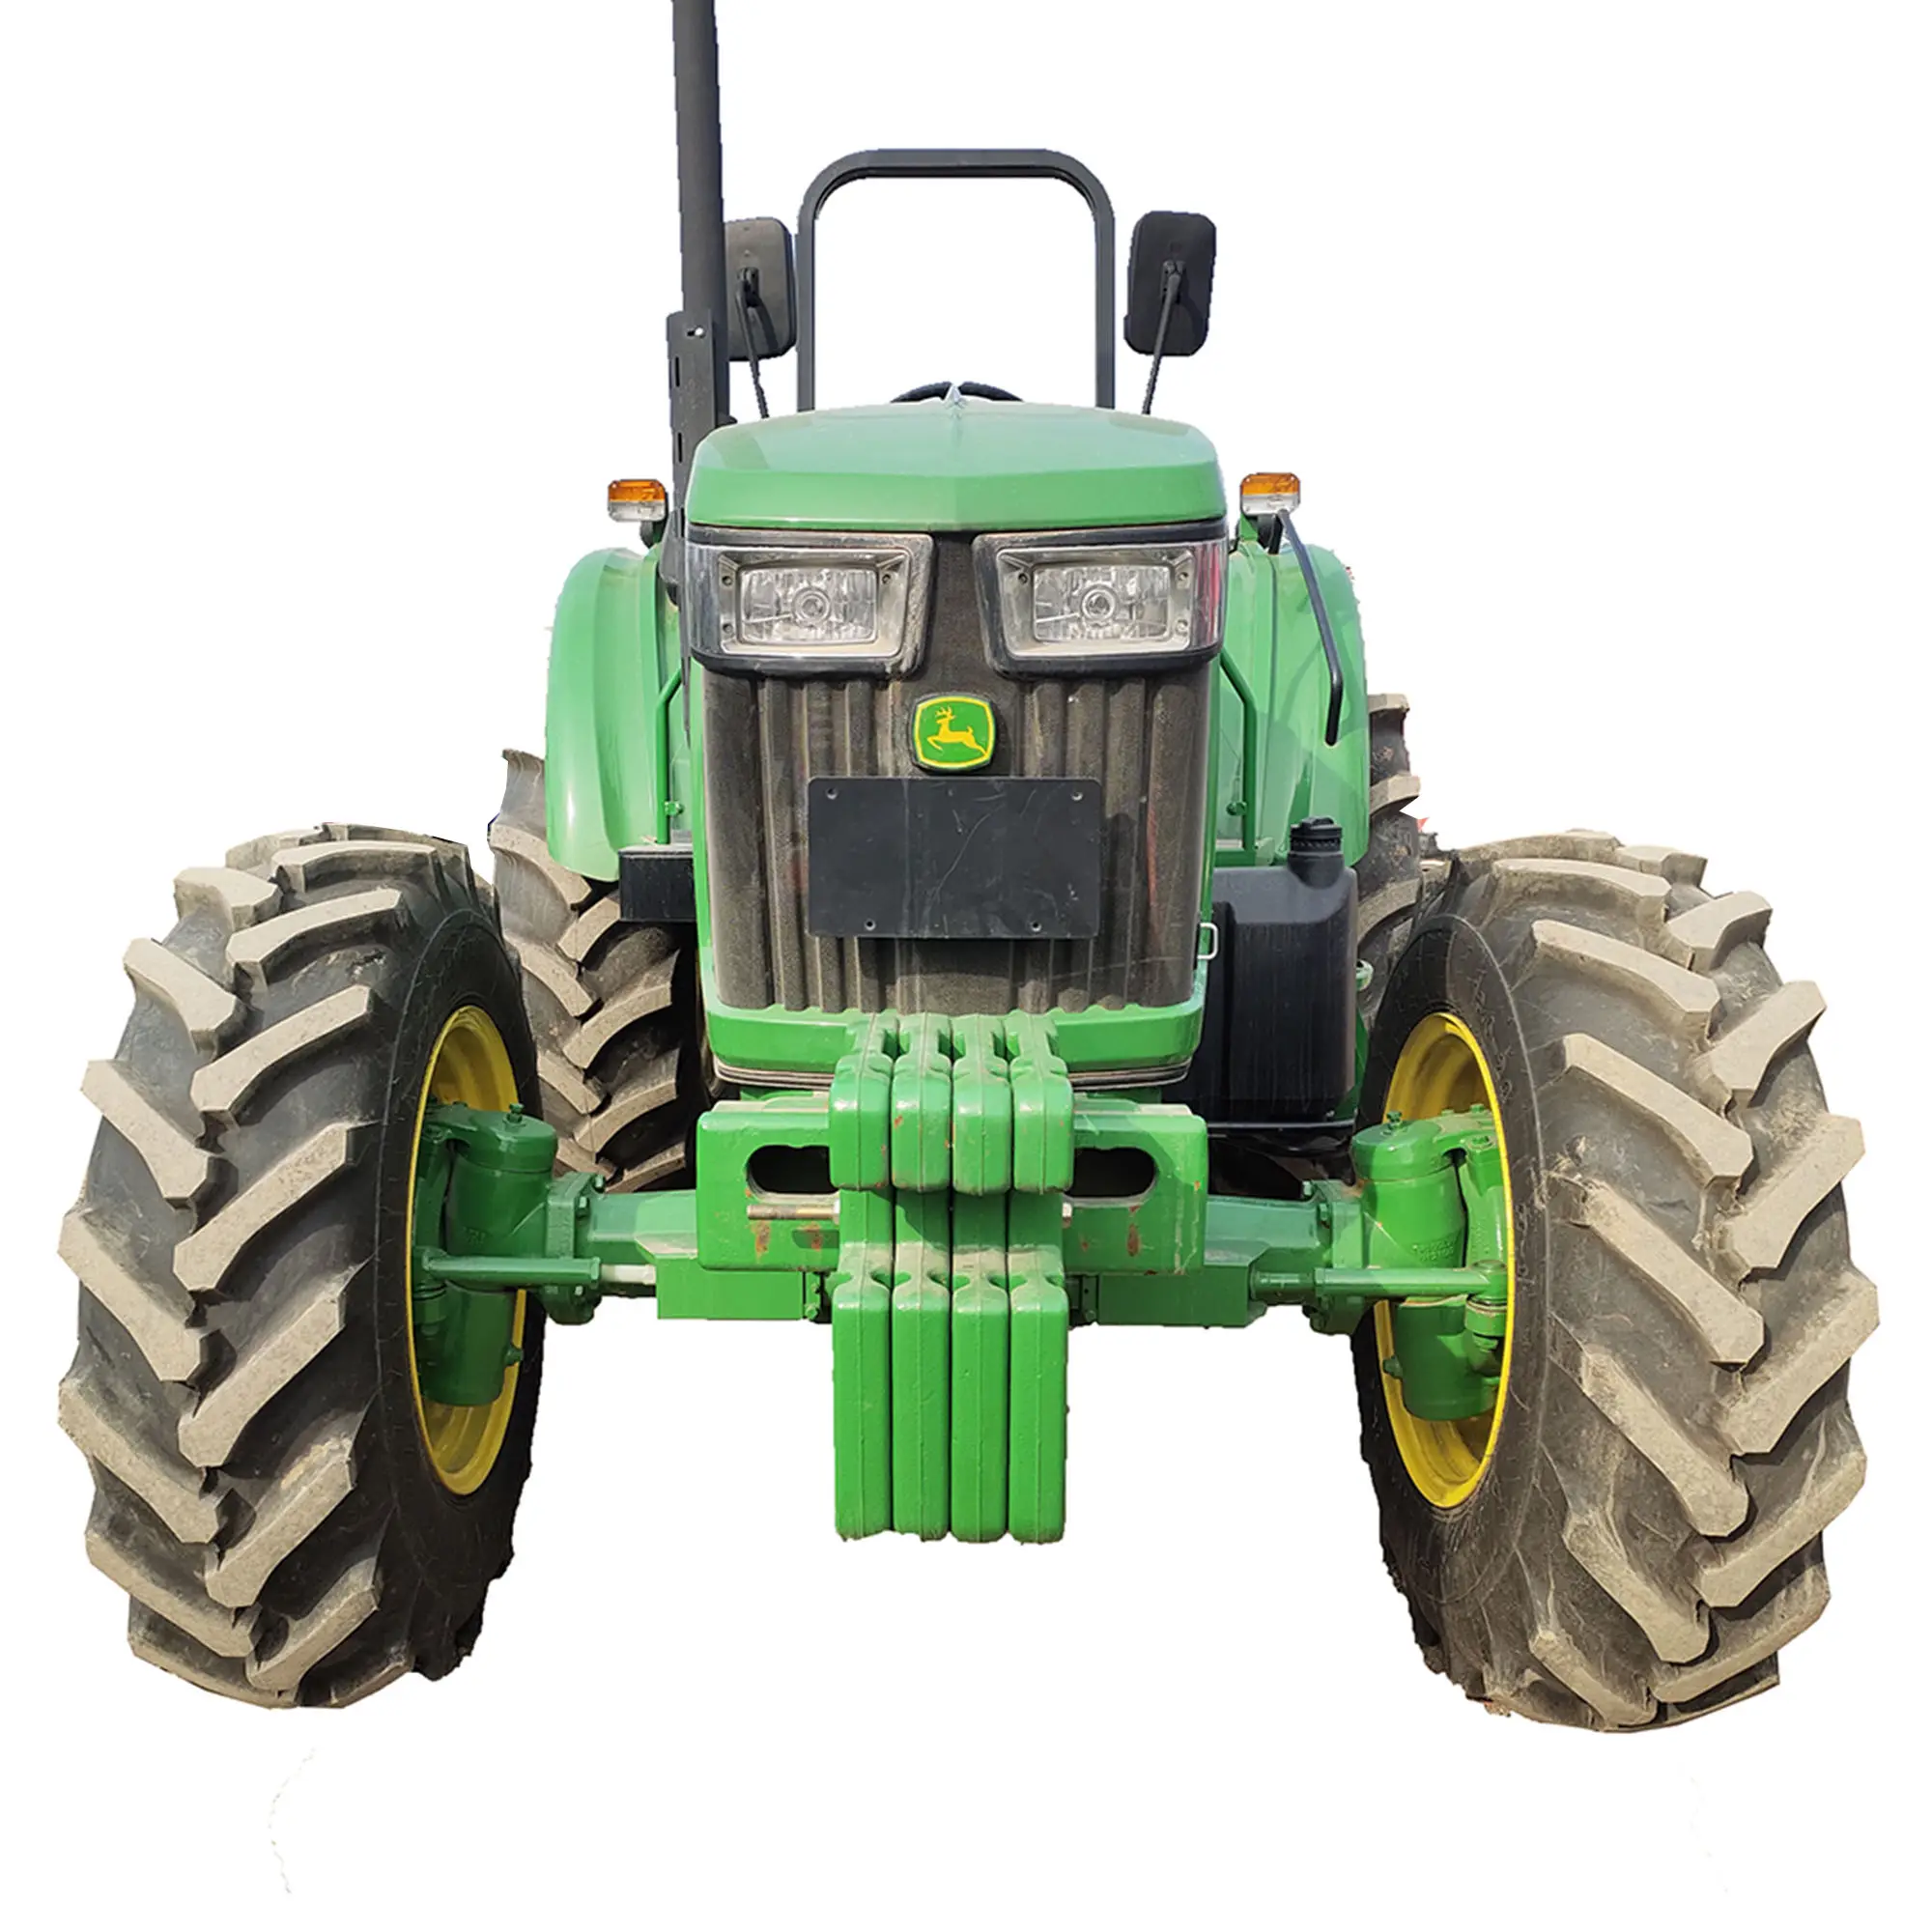 JD-Tractor usado 90hp, 95hp, 100hp, 120hp, 140hp, 4x4wd, arado a juego, plantador, cosechadora, balera, remolque, herramientas